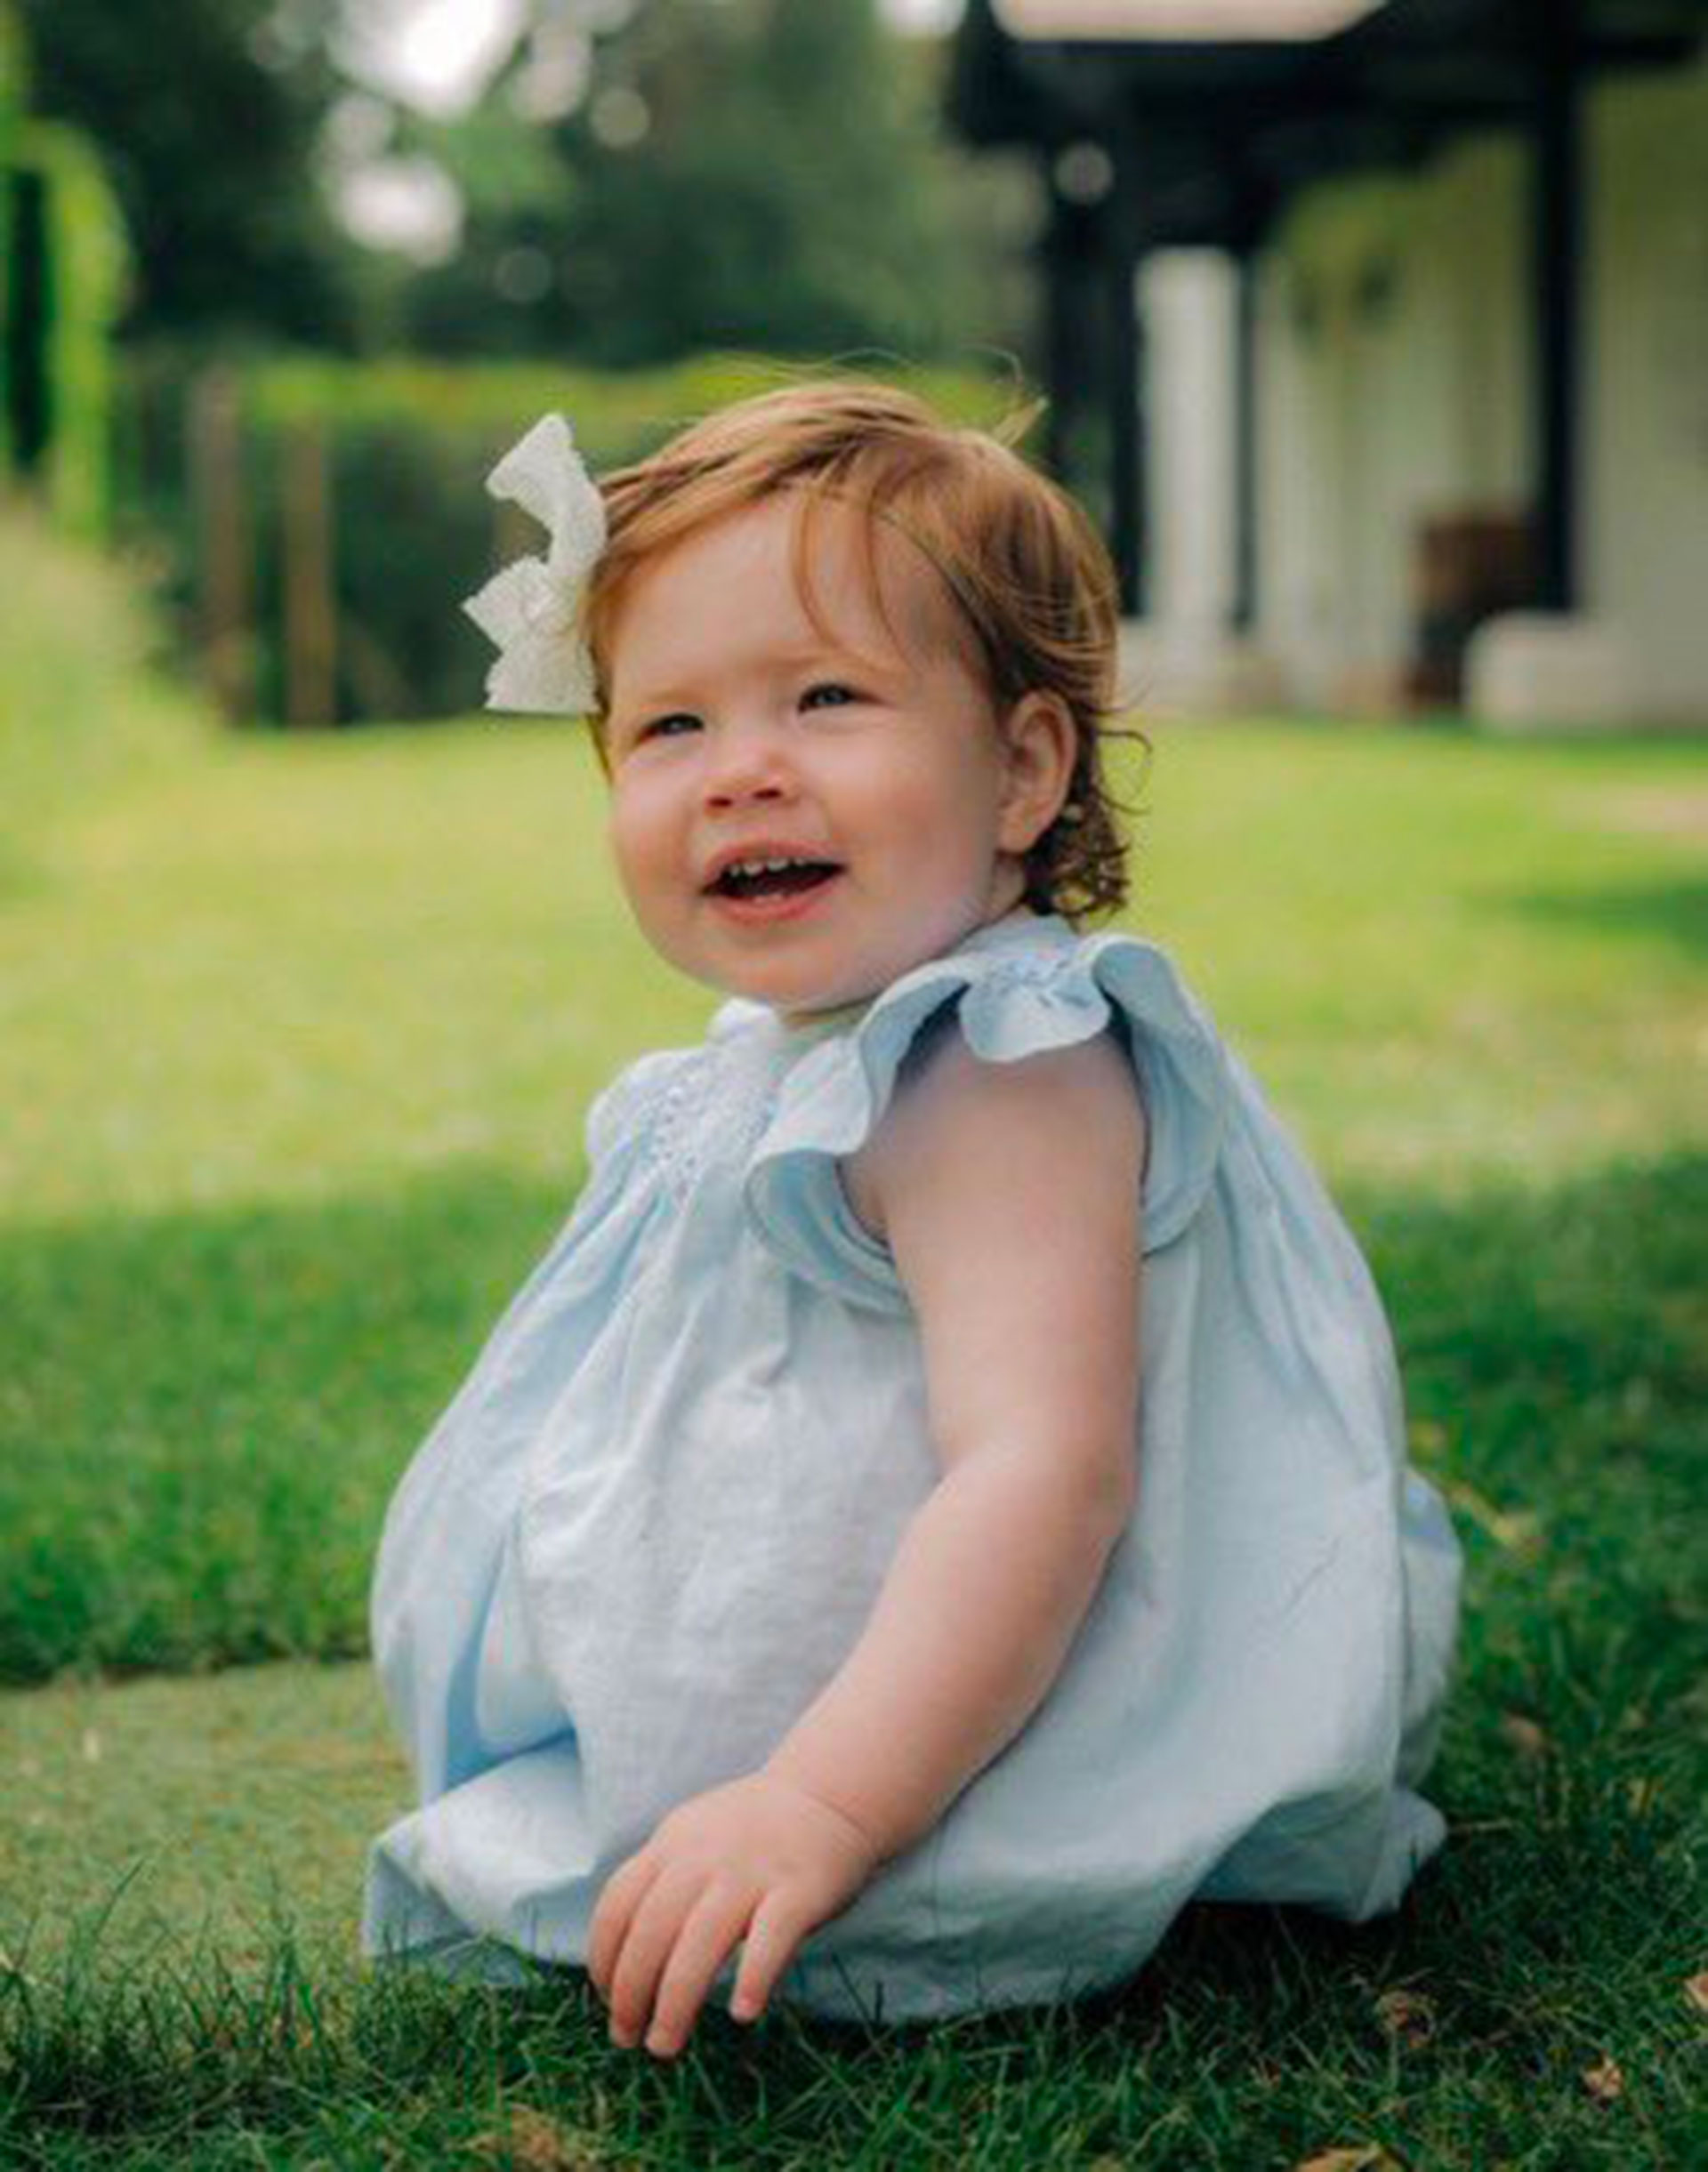 El príncipe Harry publicó nuevas fotos de su hija Lilibet